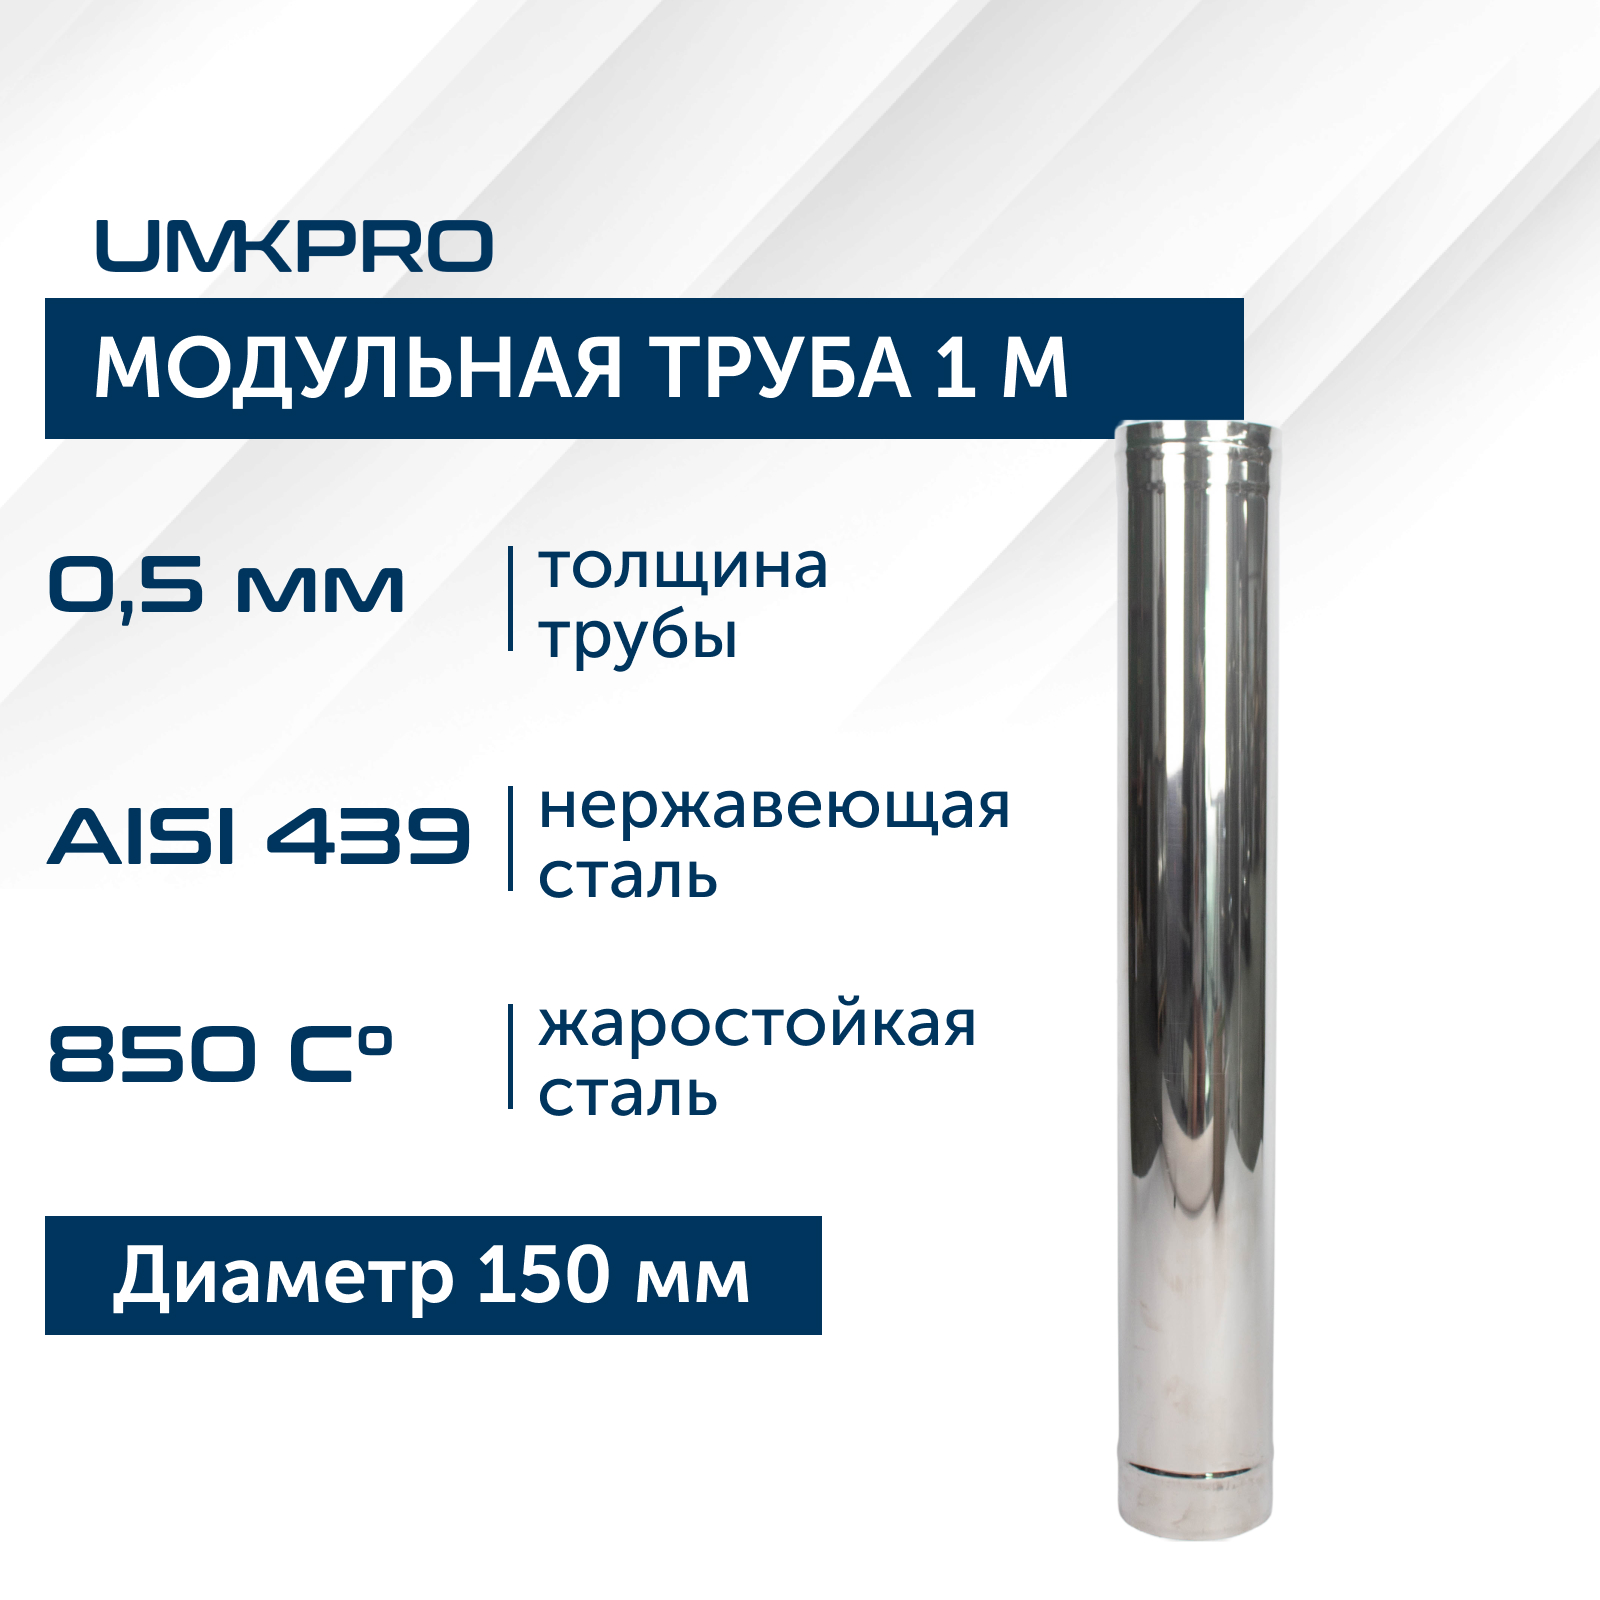 Труба модульная для дымохода 1 м UMKPRO D 150, AISI 439/0,5мм